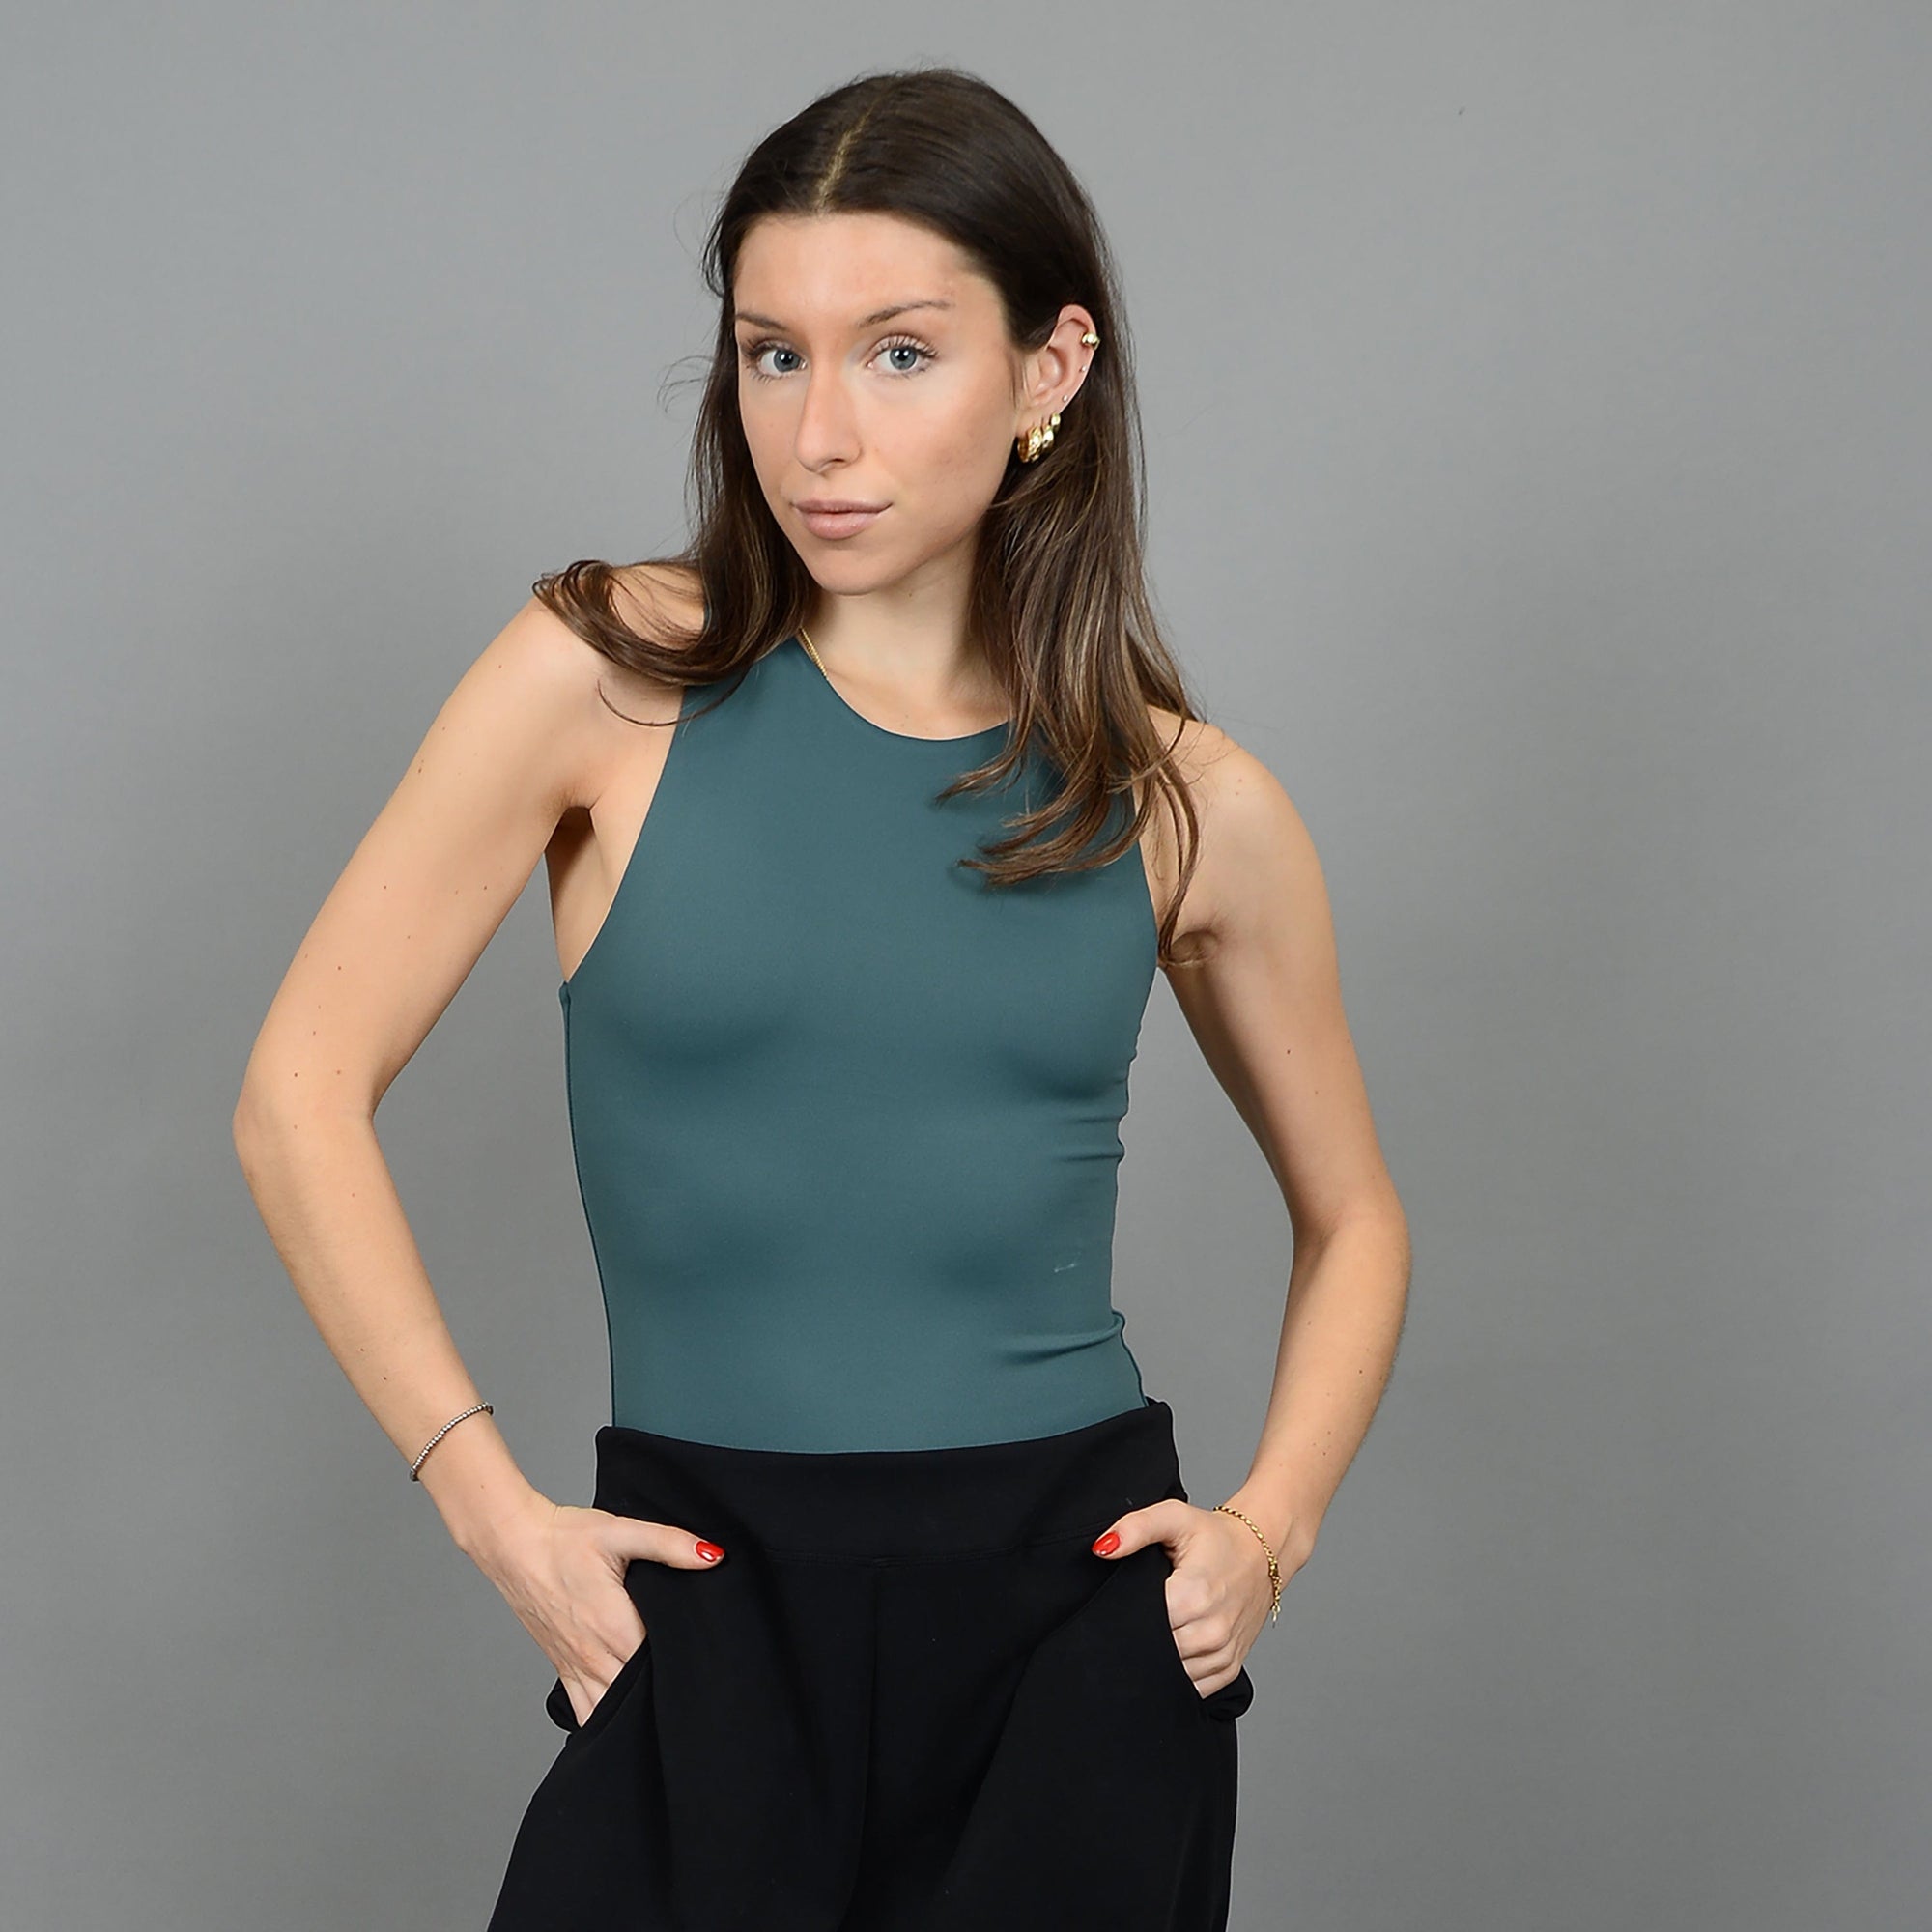 Second Skin Roxi Long Sleeve Velvet Bodysuit – BK's Brand Name